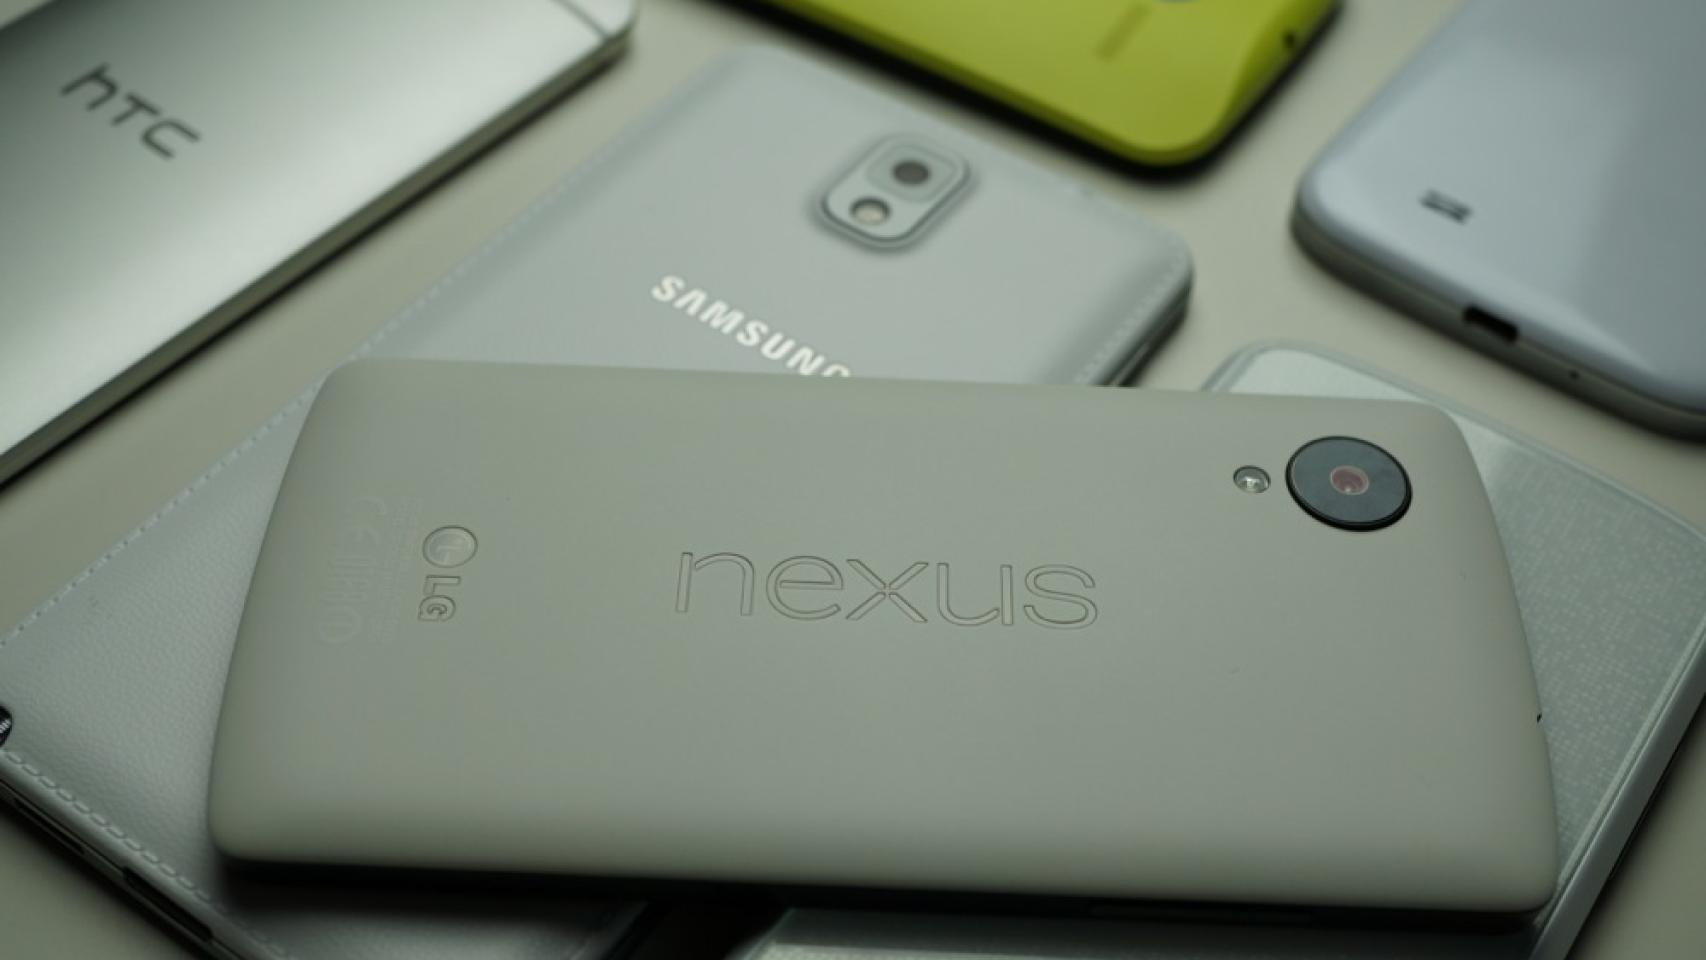 Nexus 5 y Moto G, primos hermanos que compiten por la gama alta a bajo precio